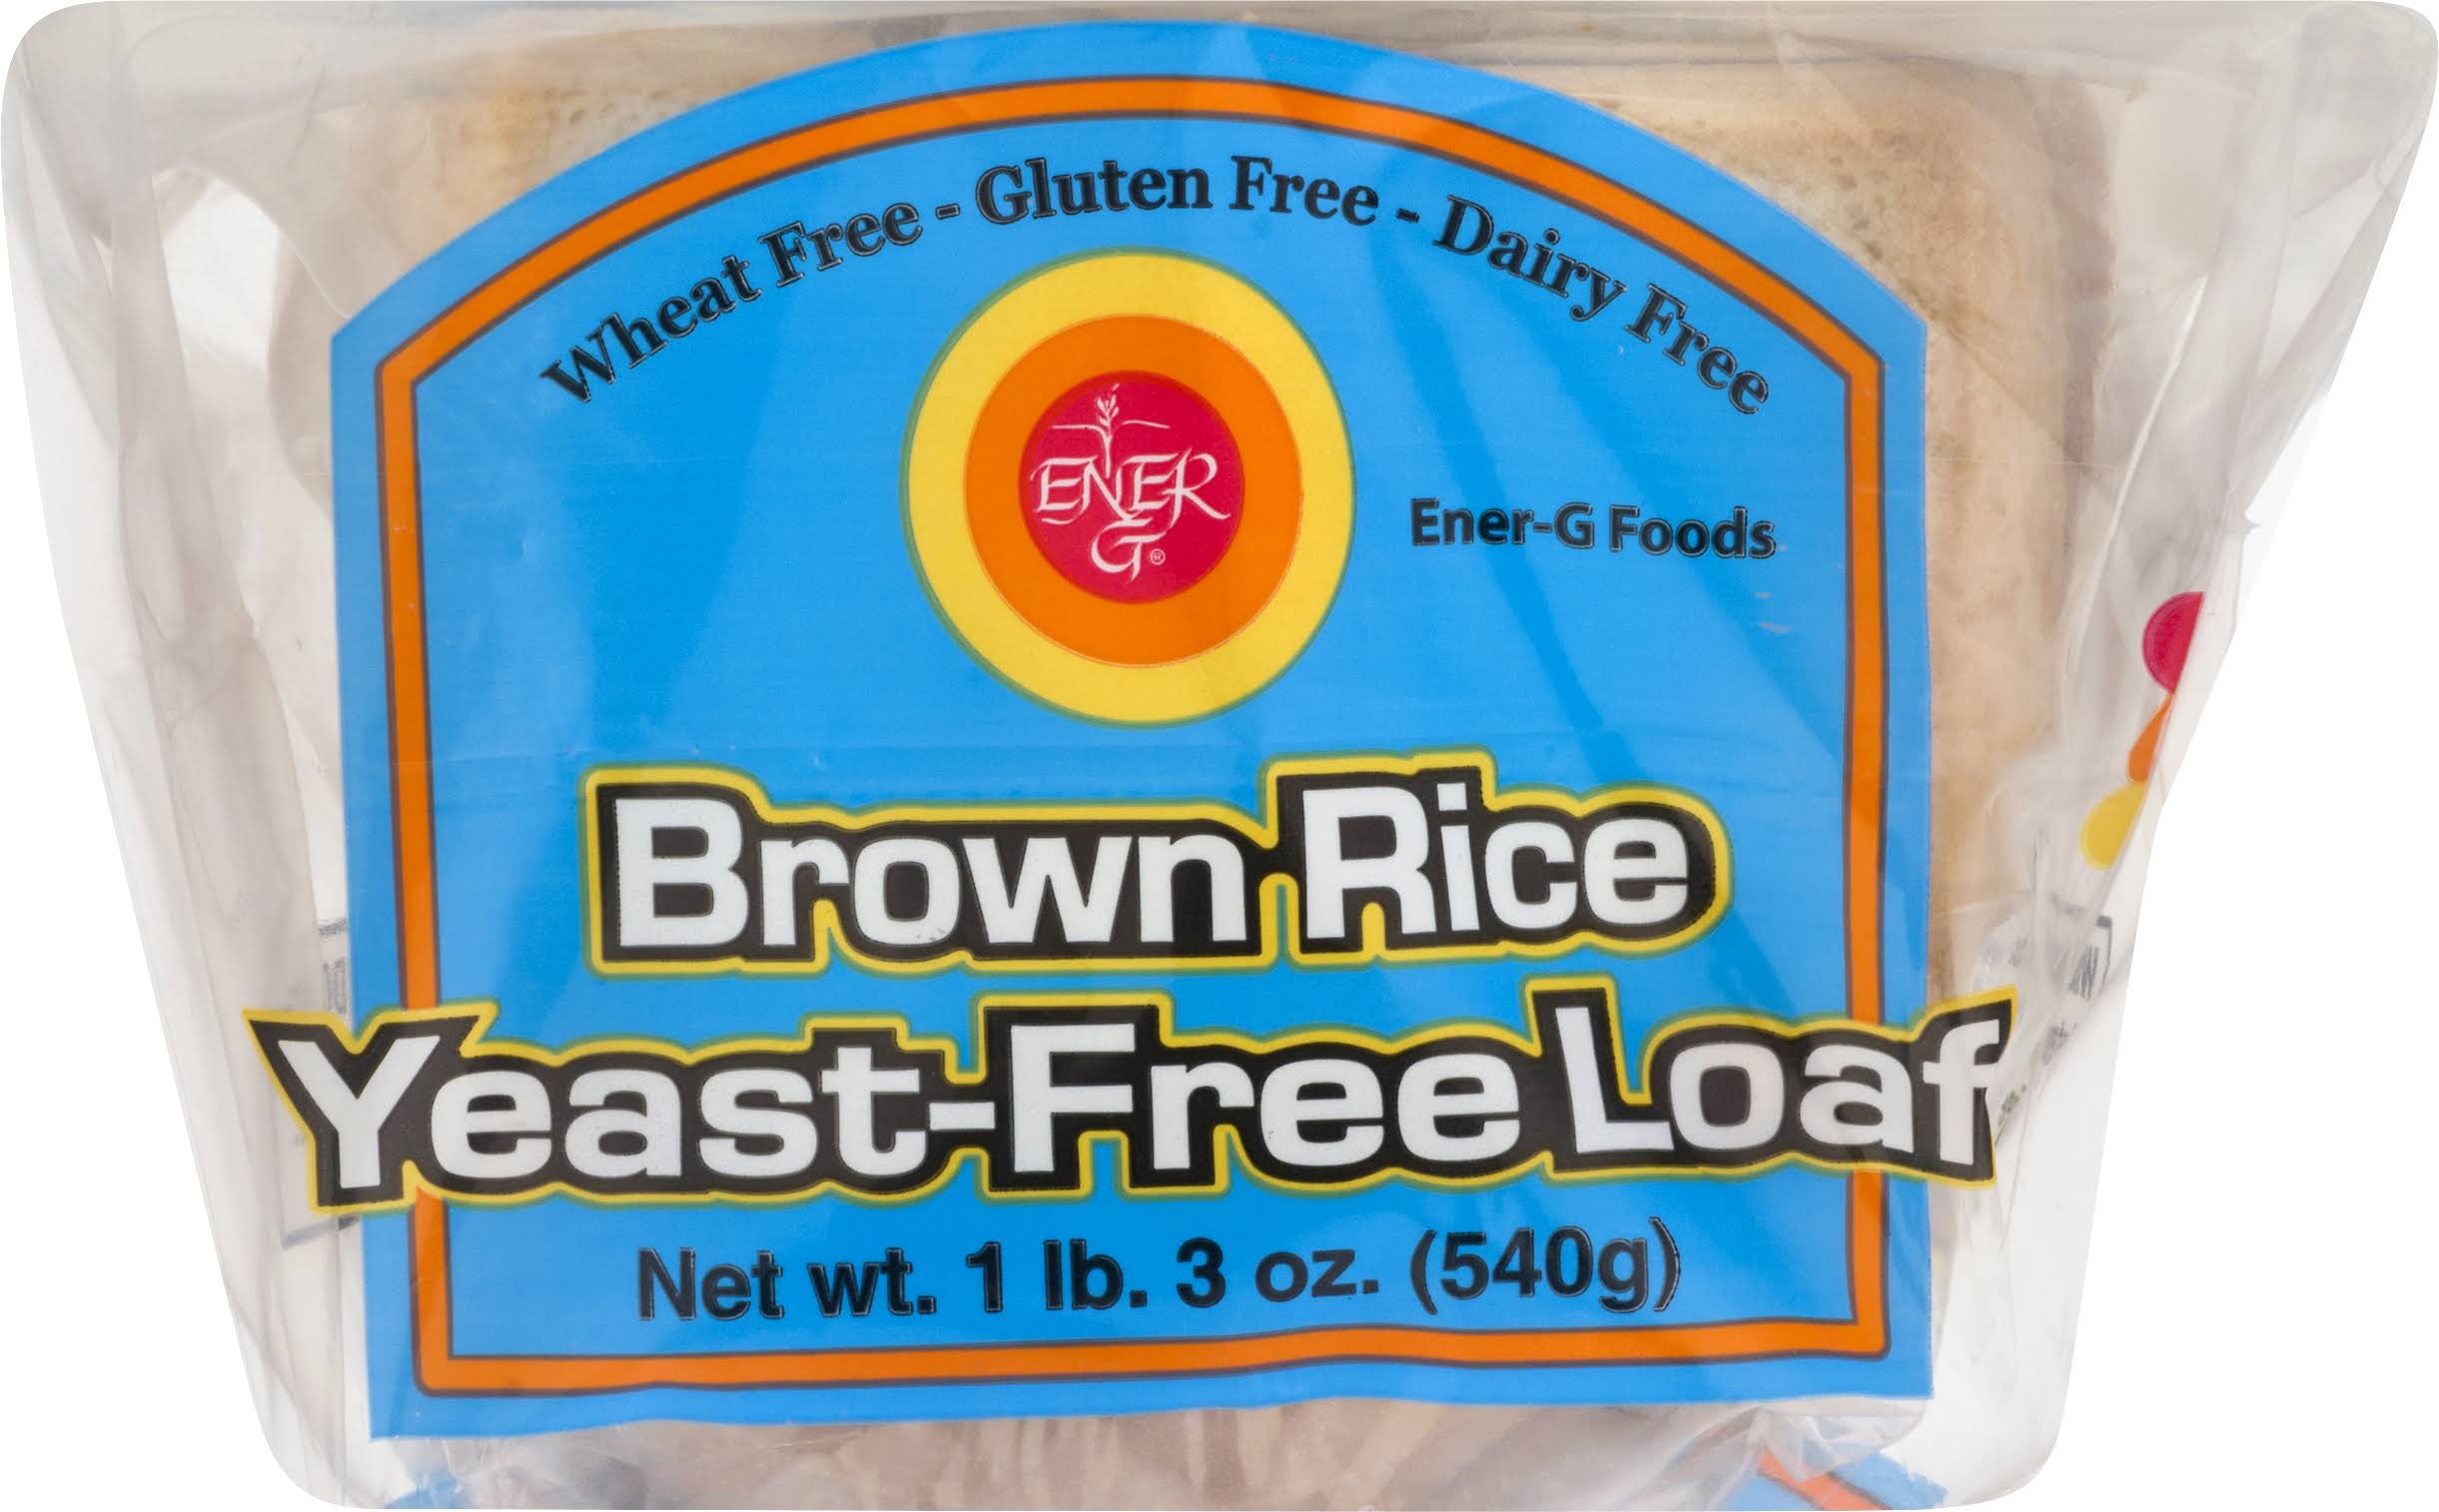 Ener-G Foods: Brown Rice Yeast-Free Loaf, 19 oz